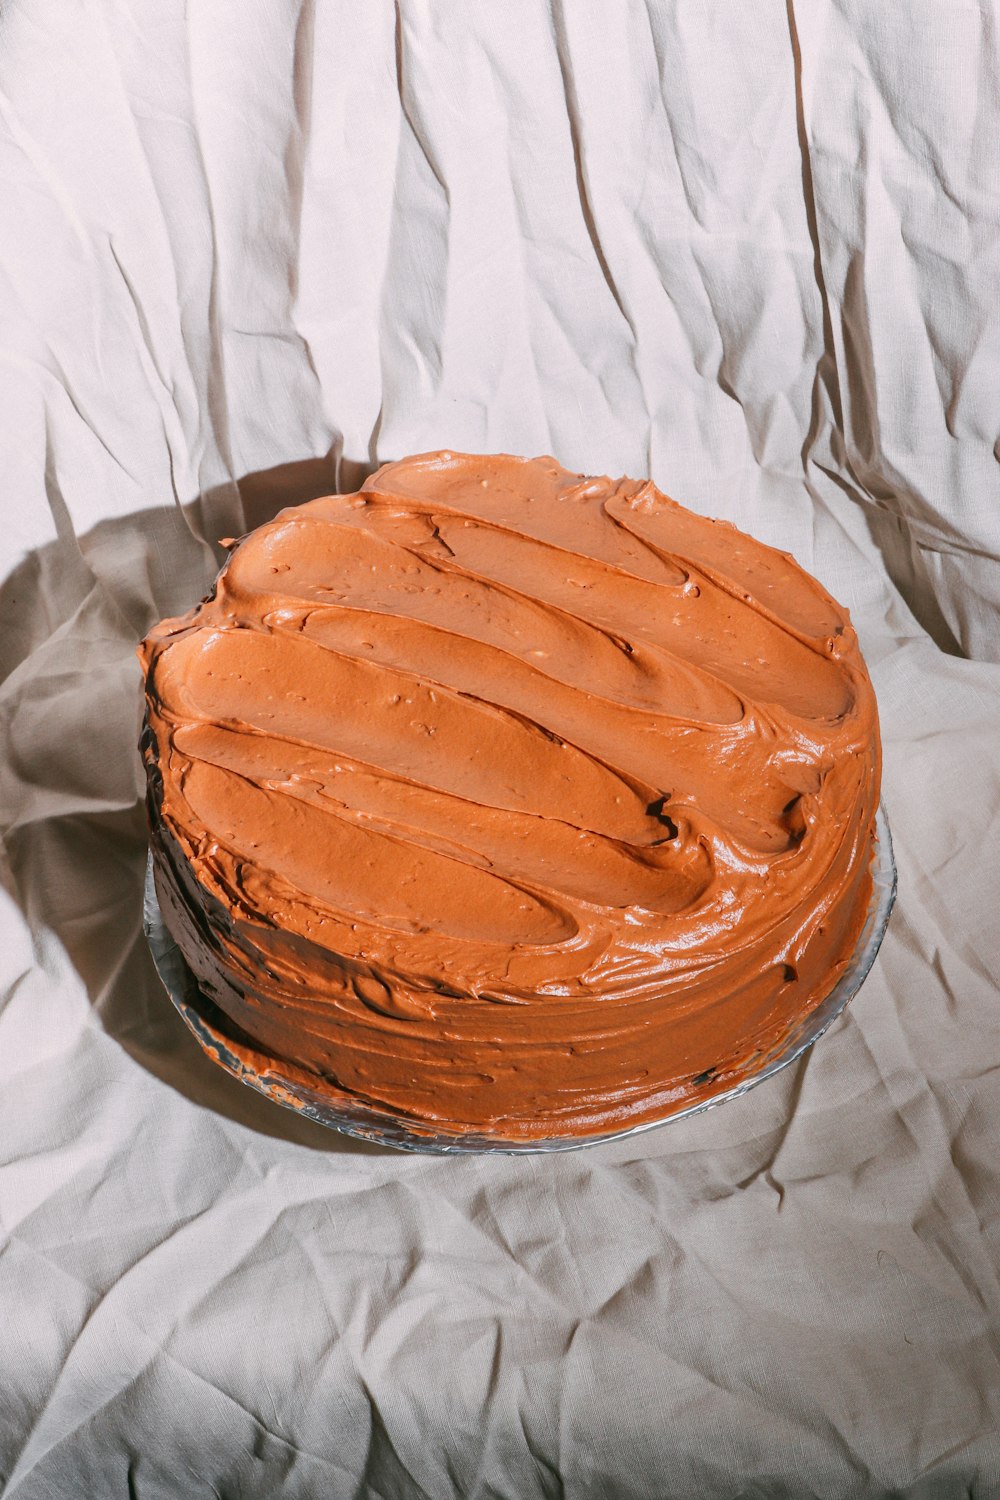 brown cake on white textile